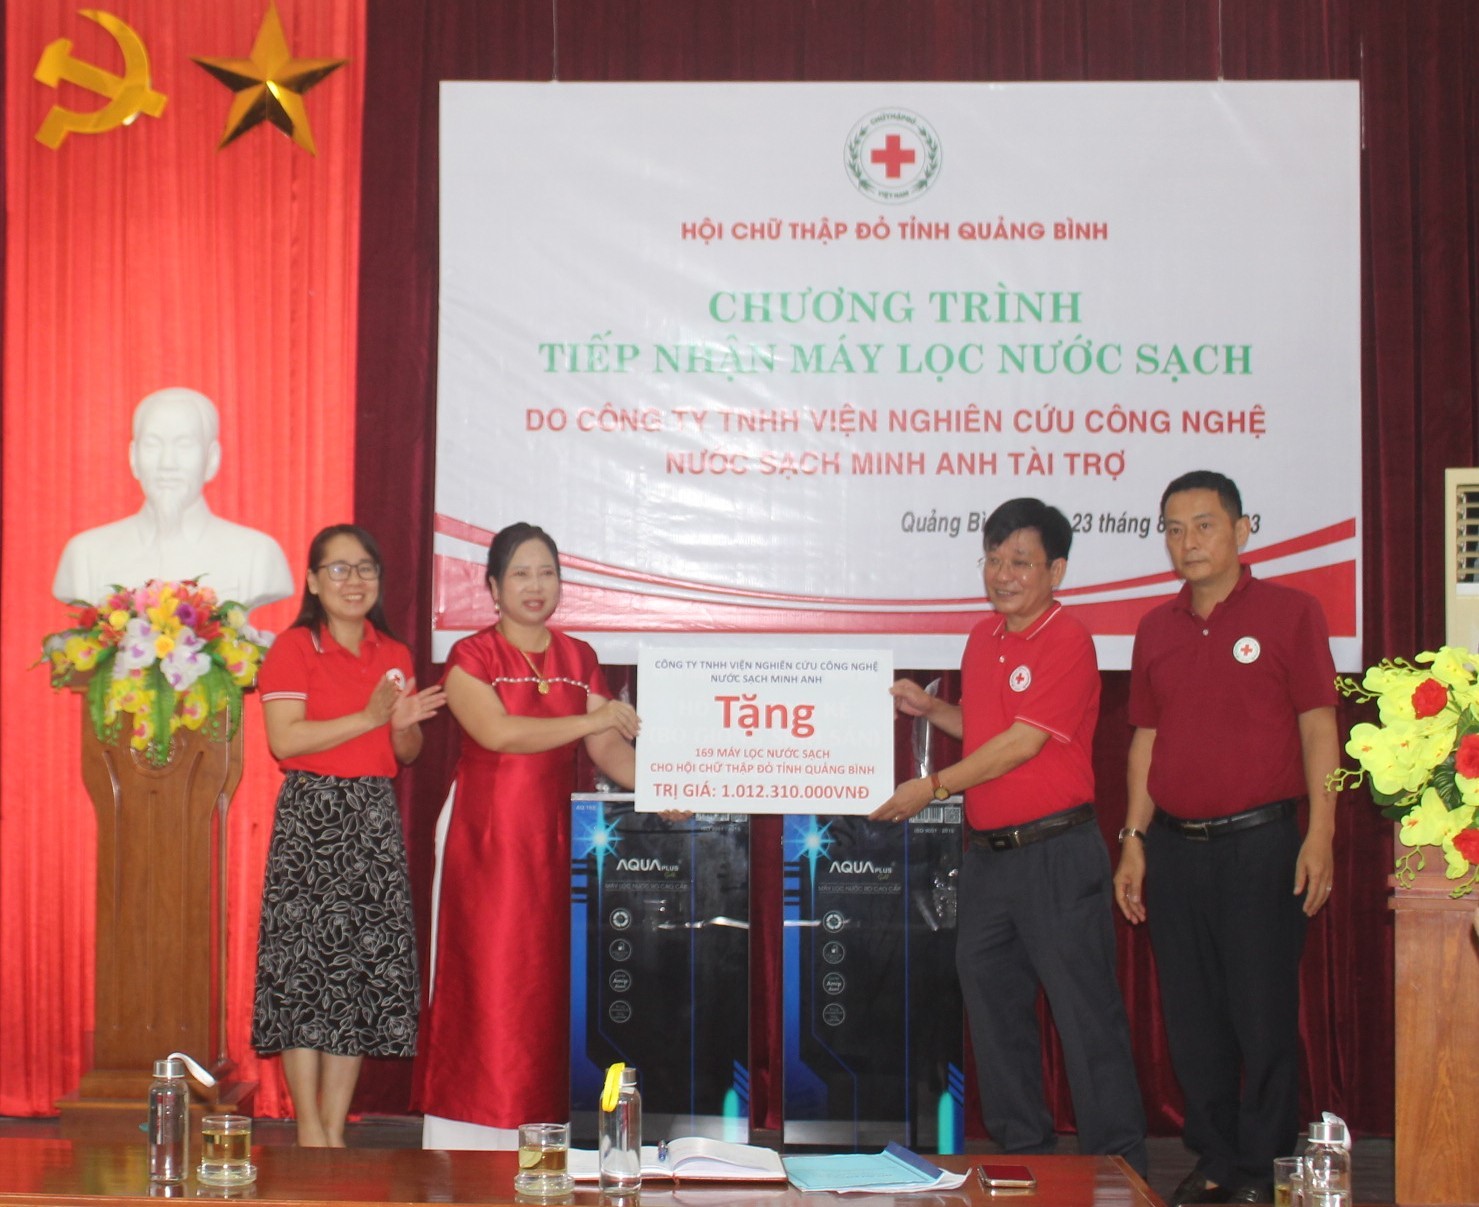 Hội Chữ thập đỏ tỉnh Quảng Bình tiếp nhận 169 máy lọc nước.